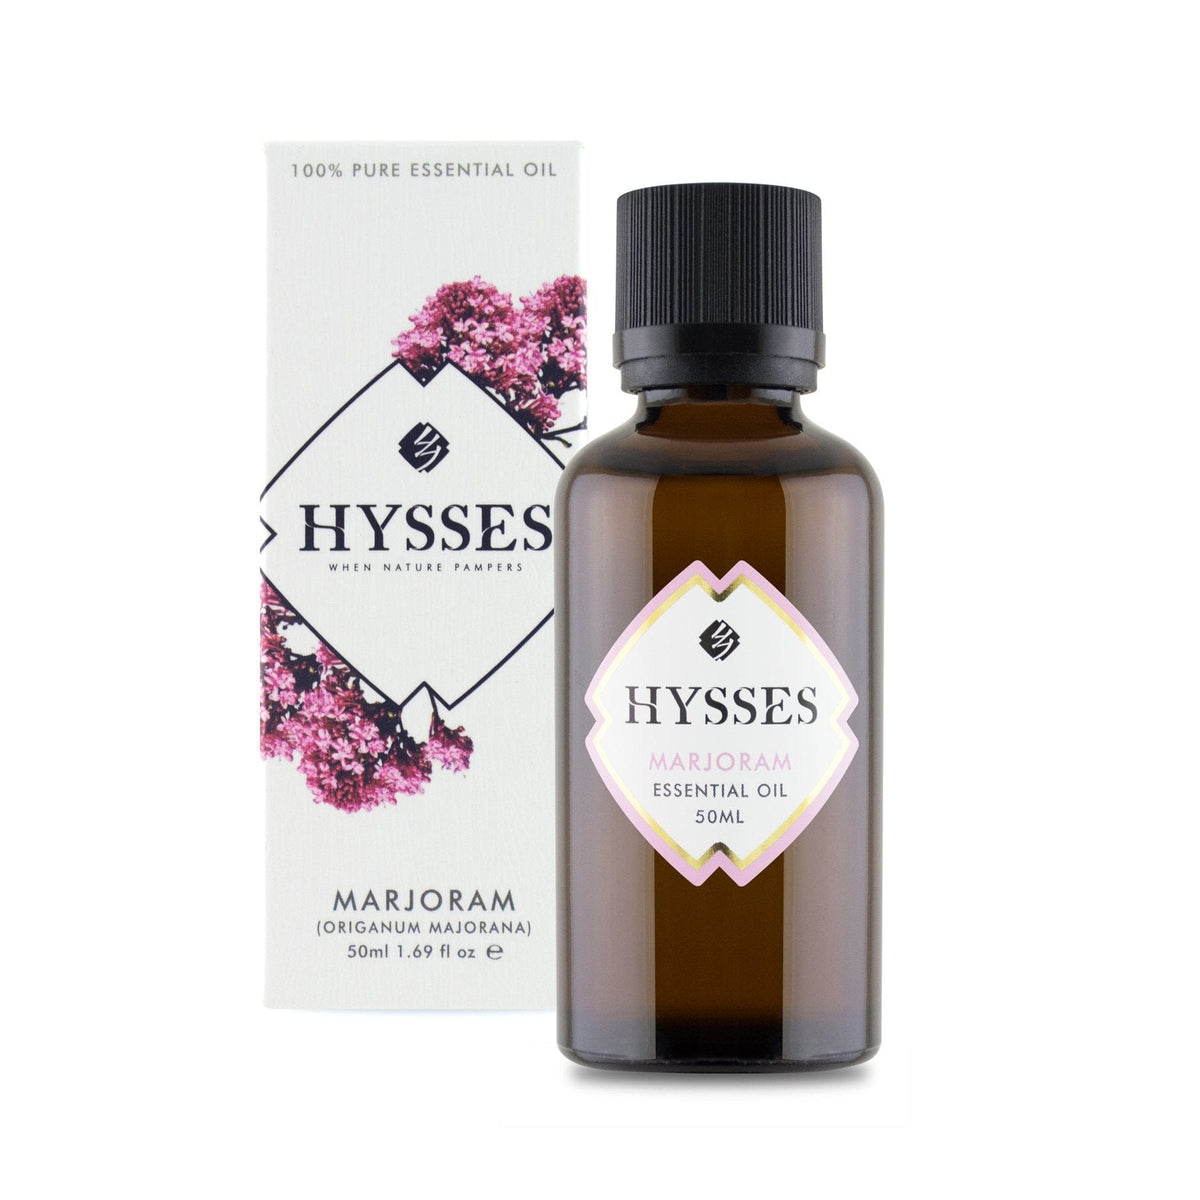 Hysses Essential Oil 50ml Essential Oil Marjoram